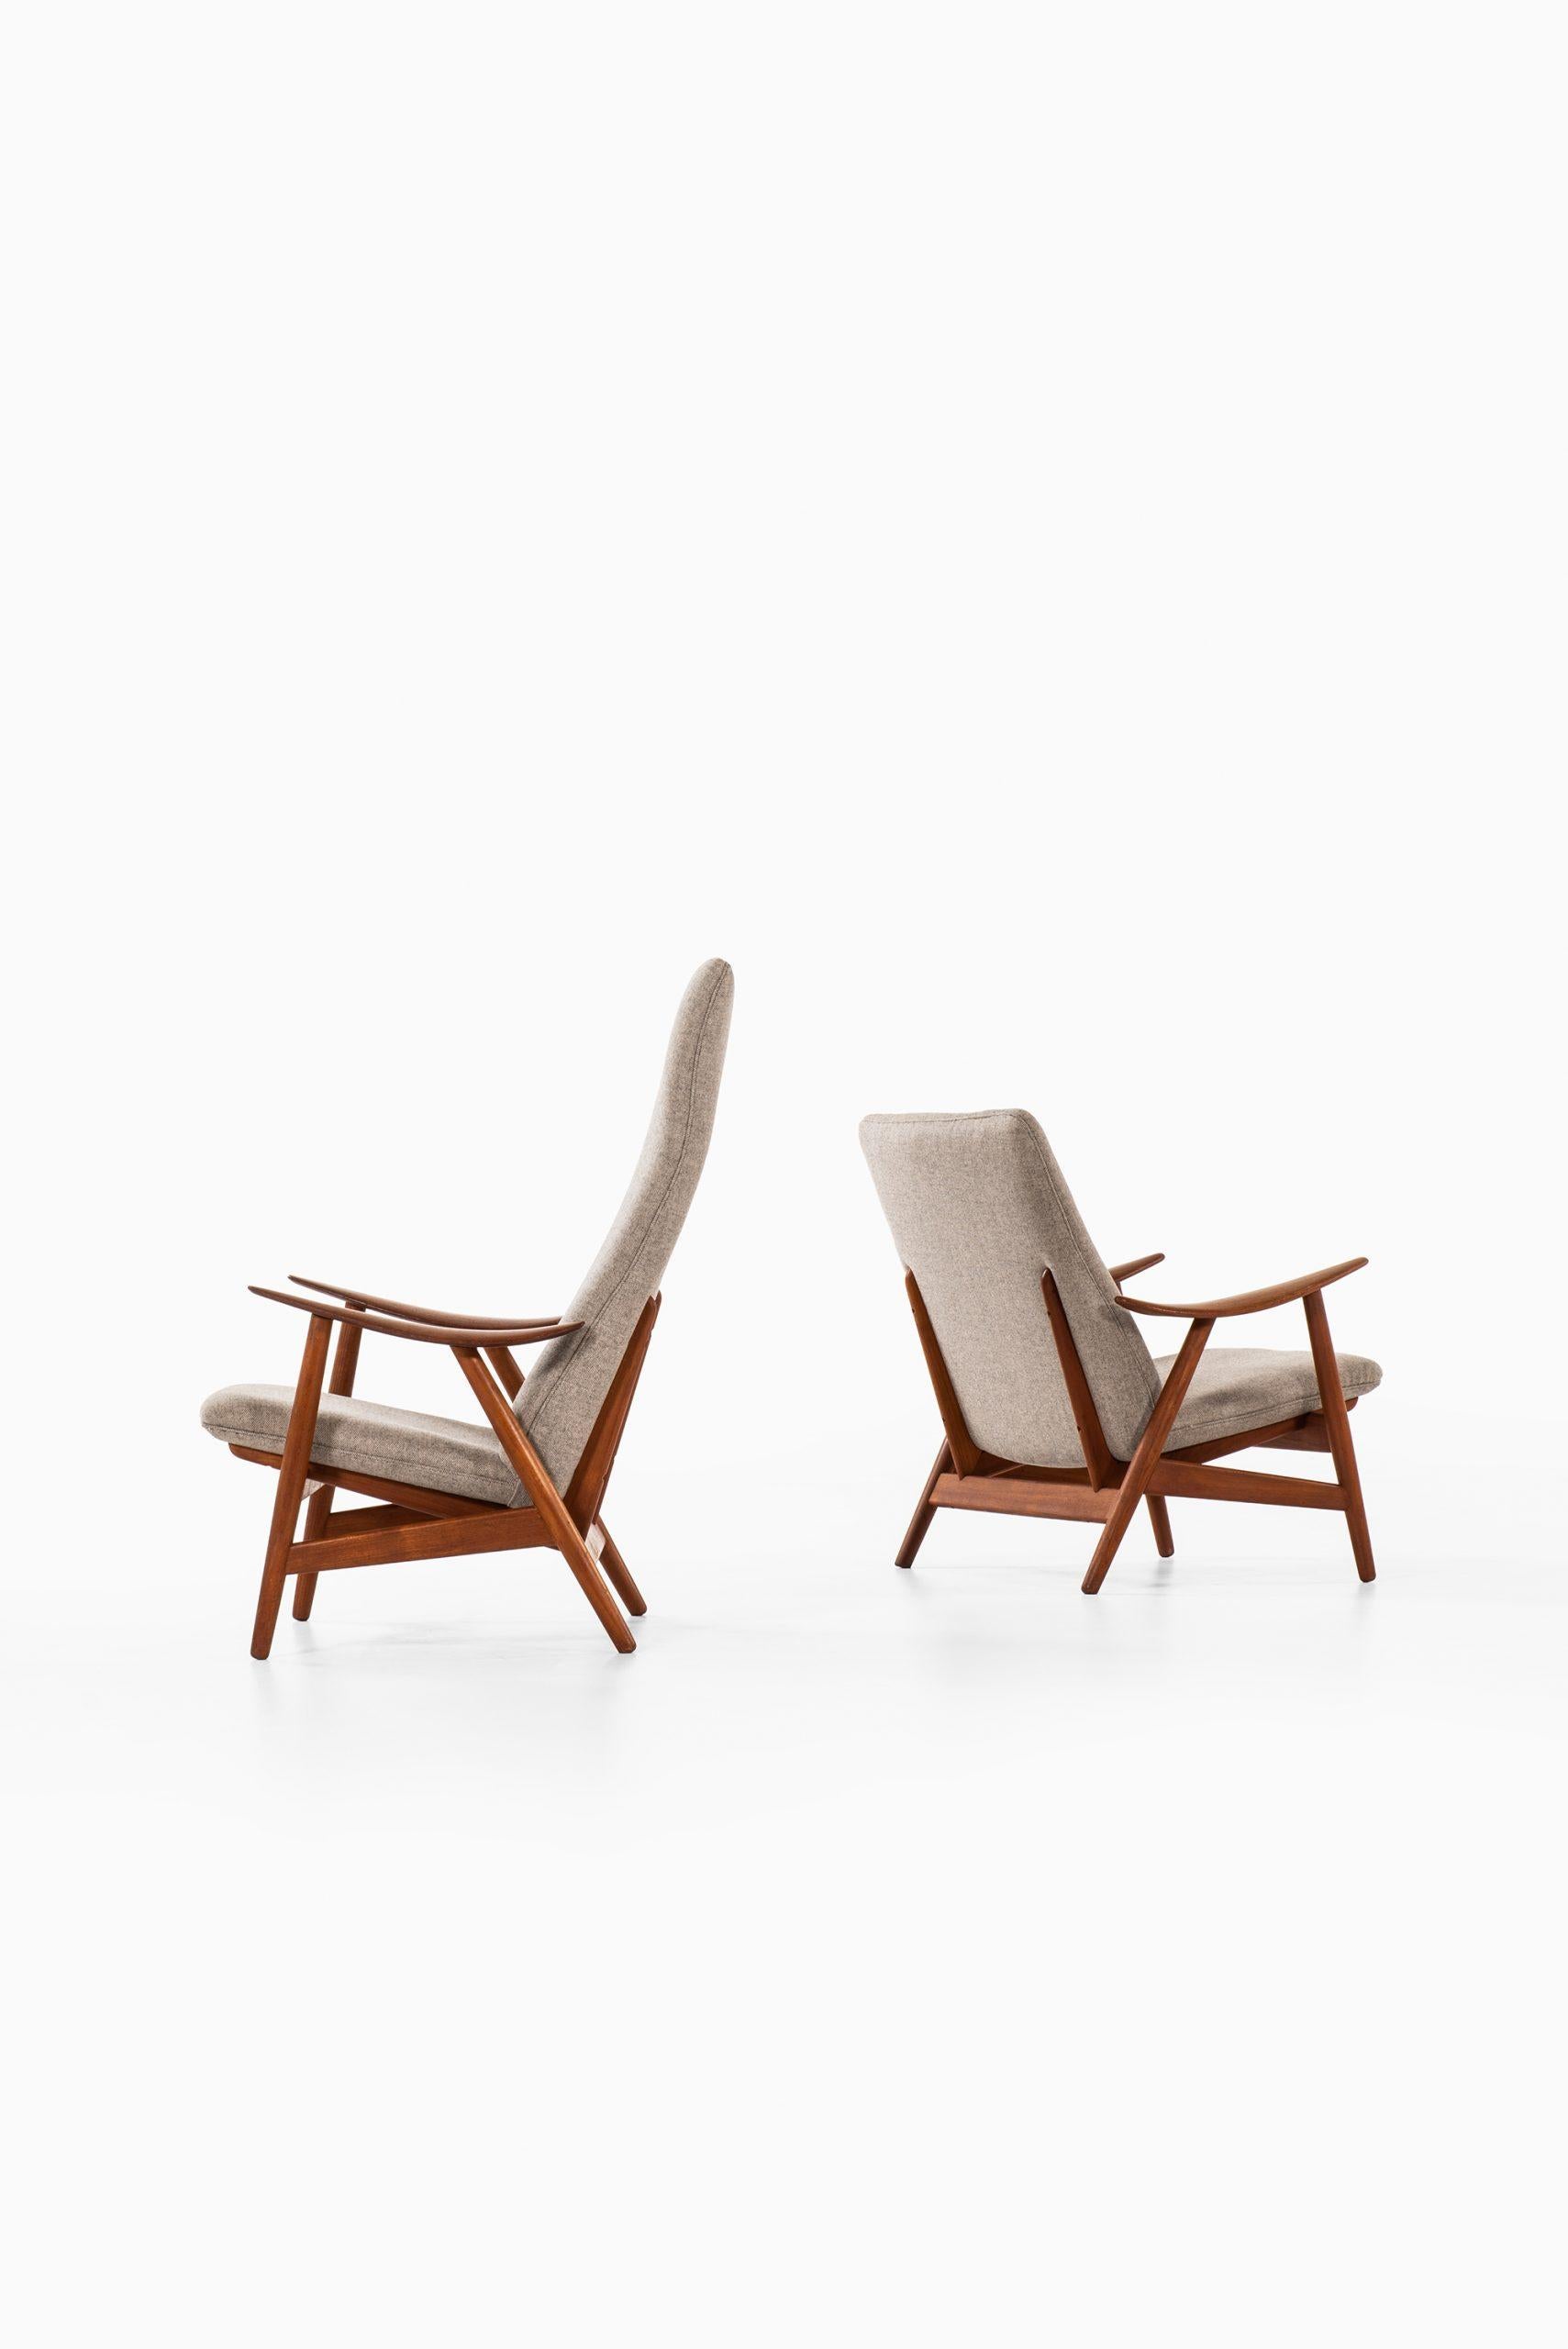 Sehr seltenes Paar Sessel Modell 10, entworfen von Illum Wikkelsø. Produziert von der Søren Willadsen Møbelfabrik in Dänemark.
Maße Lowback (B x T x H): 80 x 78 x 80 cm, SH 38 cm.
Maße Hochlehner (B x T x H): 80 x 80 x 103 cm, SH 38 cm.